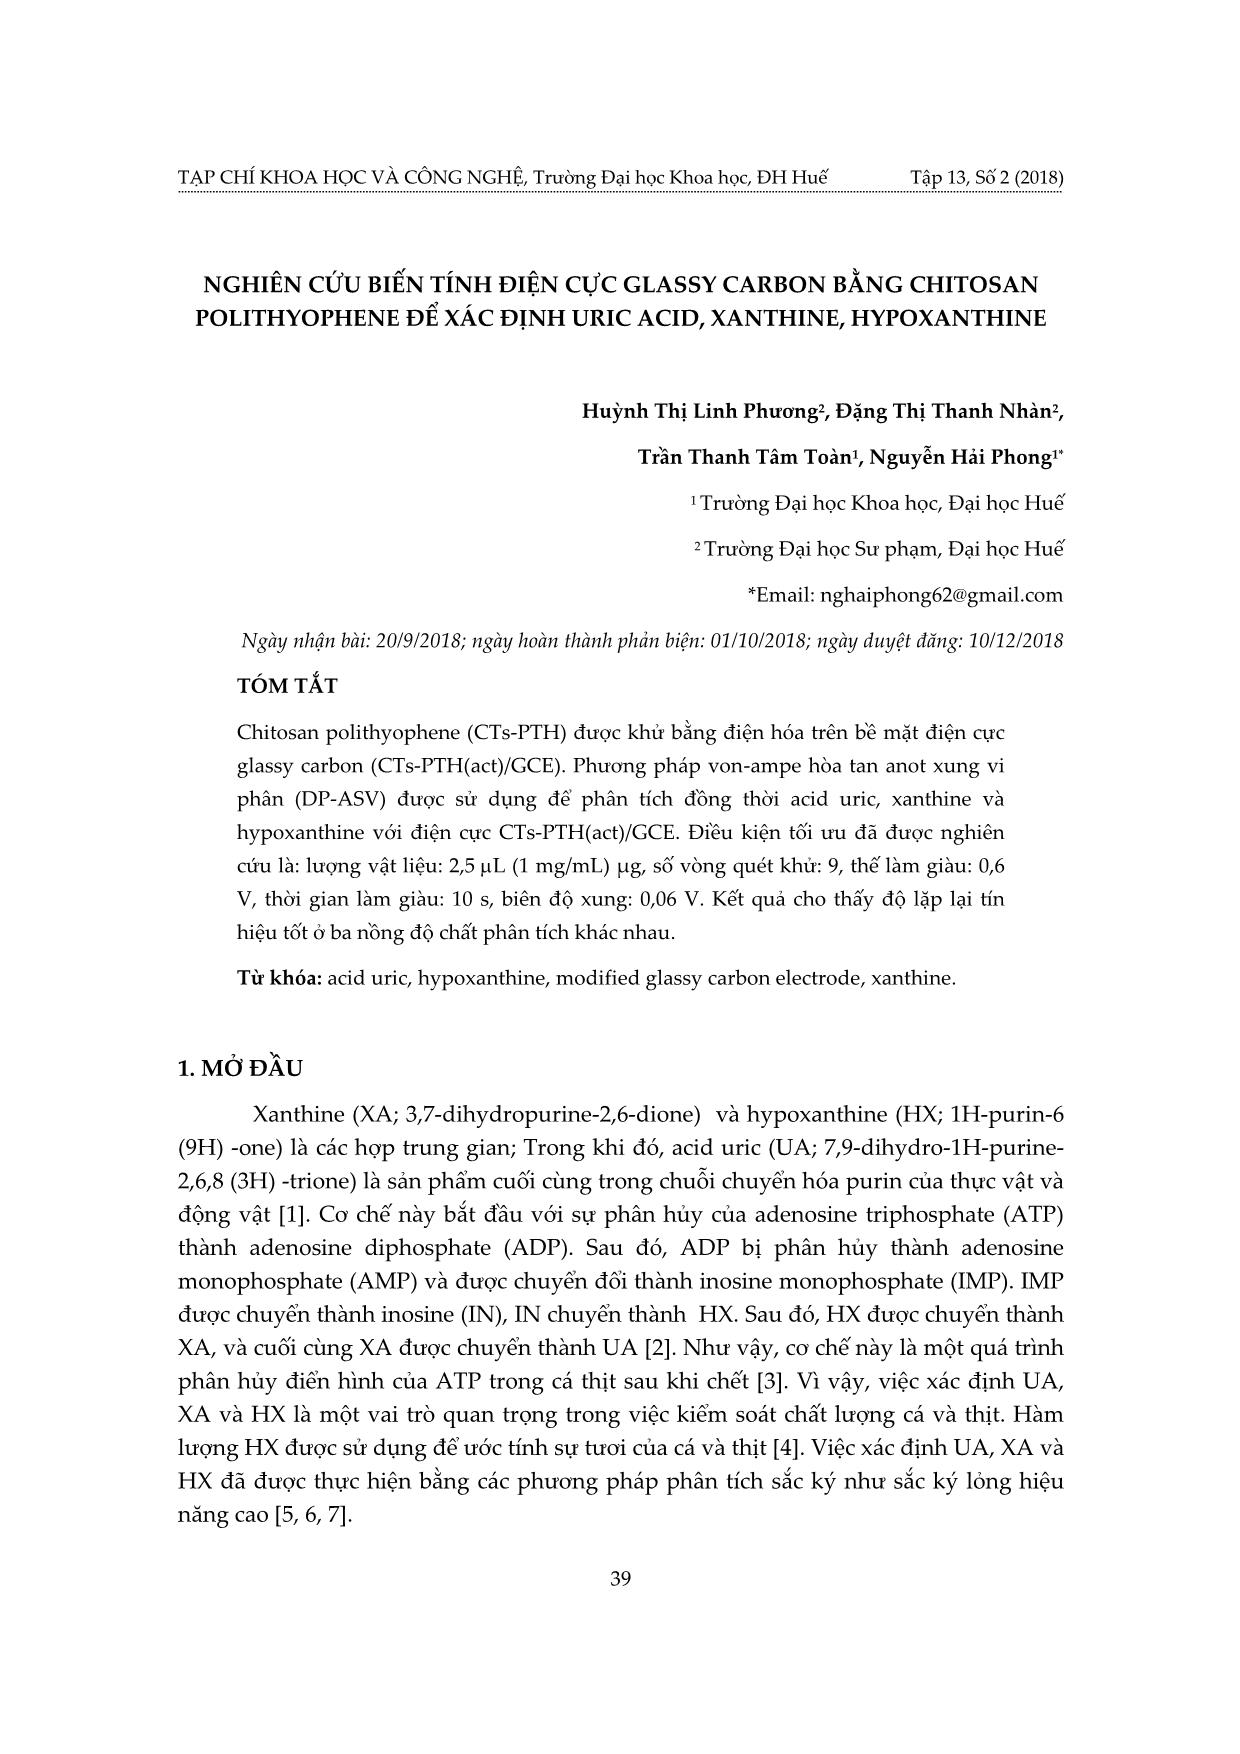 Nghiên cứu biến tính điện cực glassy carbon bằng chitosan polithyophene để xác định uric acid, xanthine, hypoxanthine trang 1